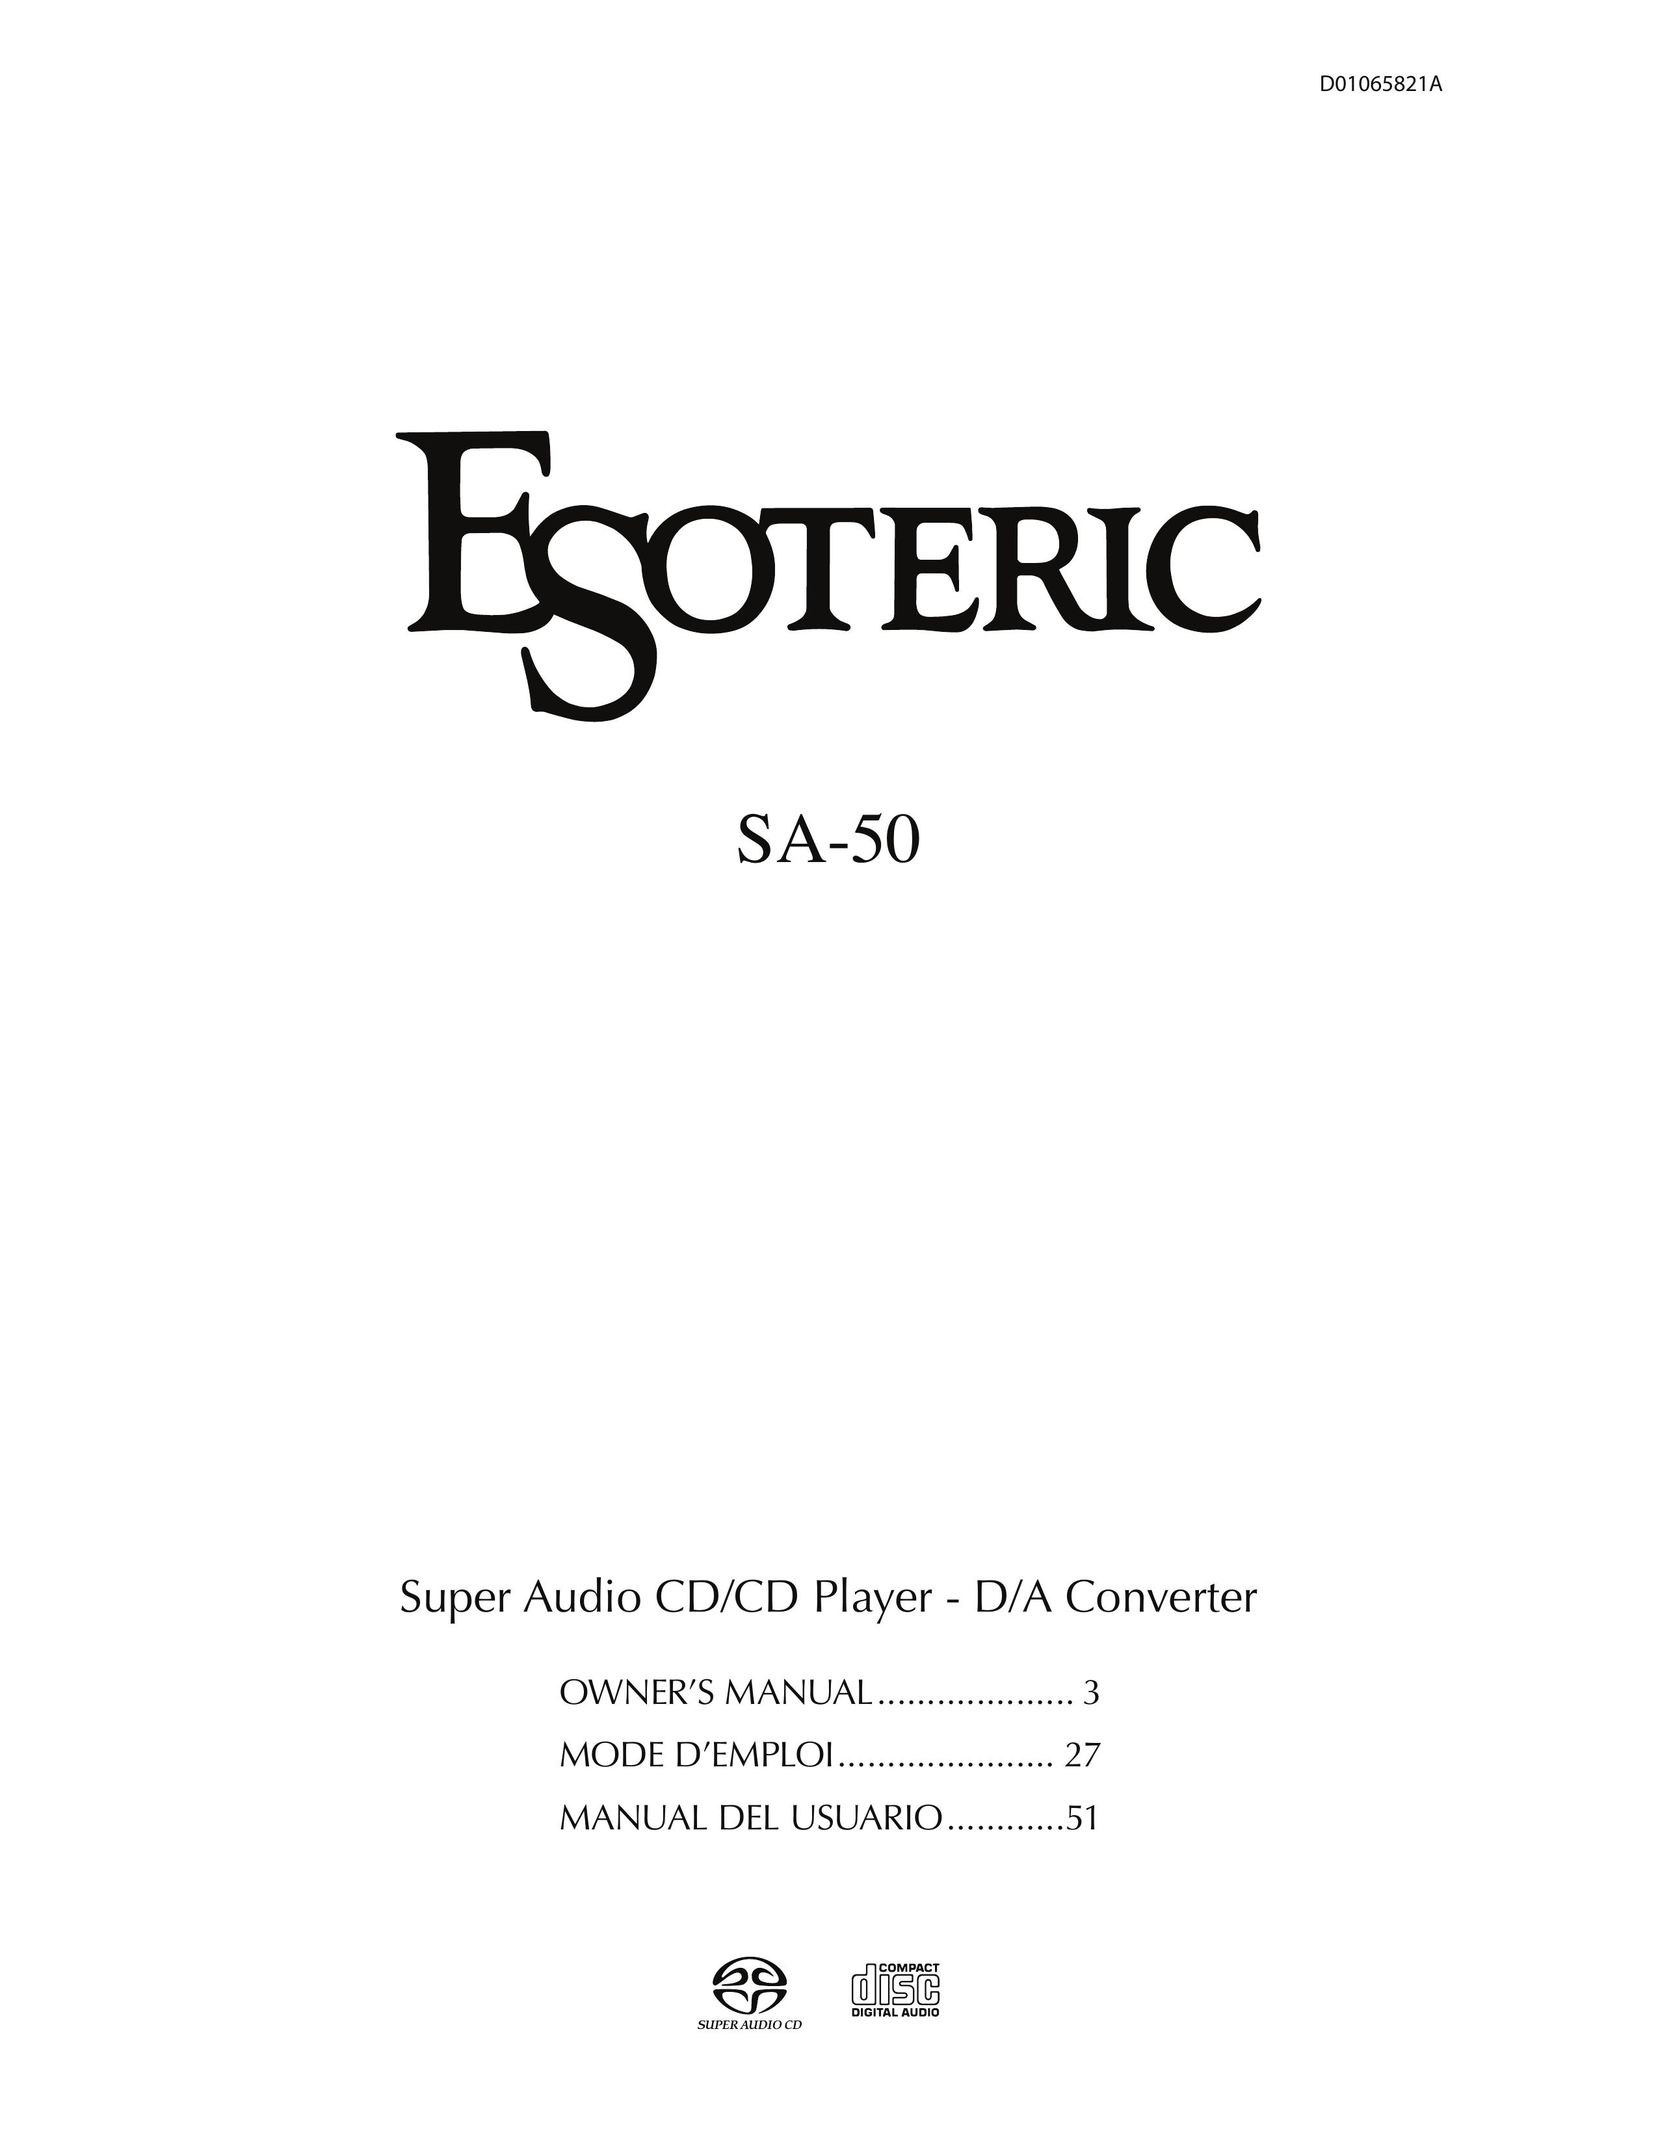 Esoteric SA-50 CD Player User Manual